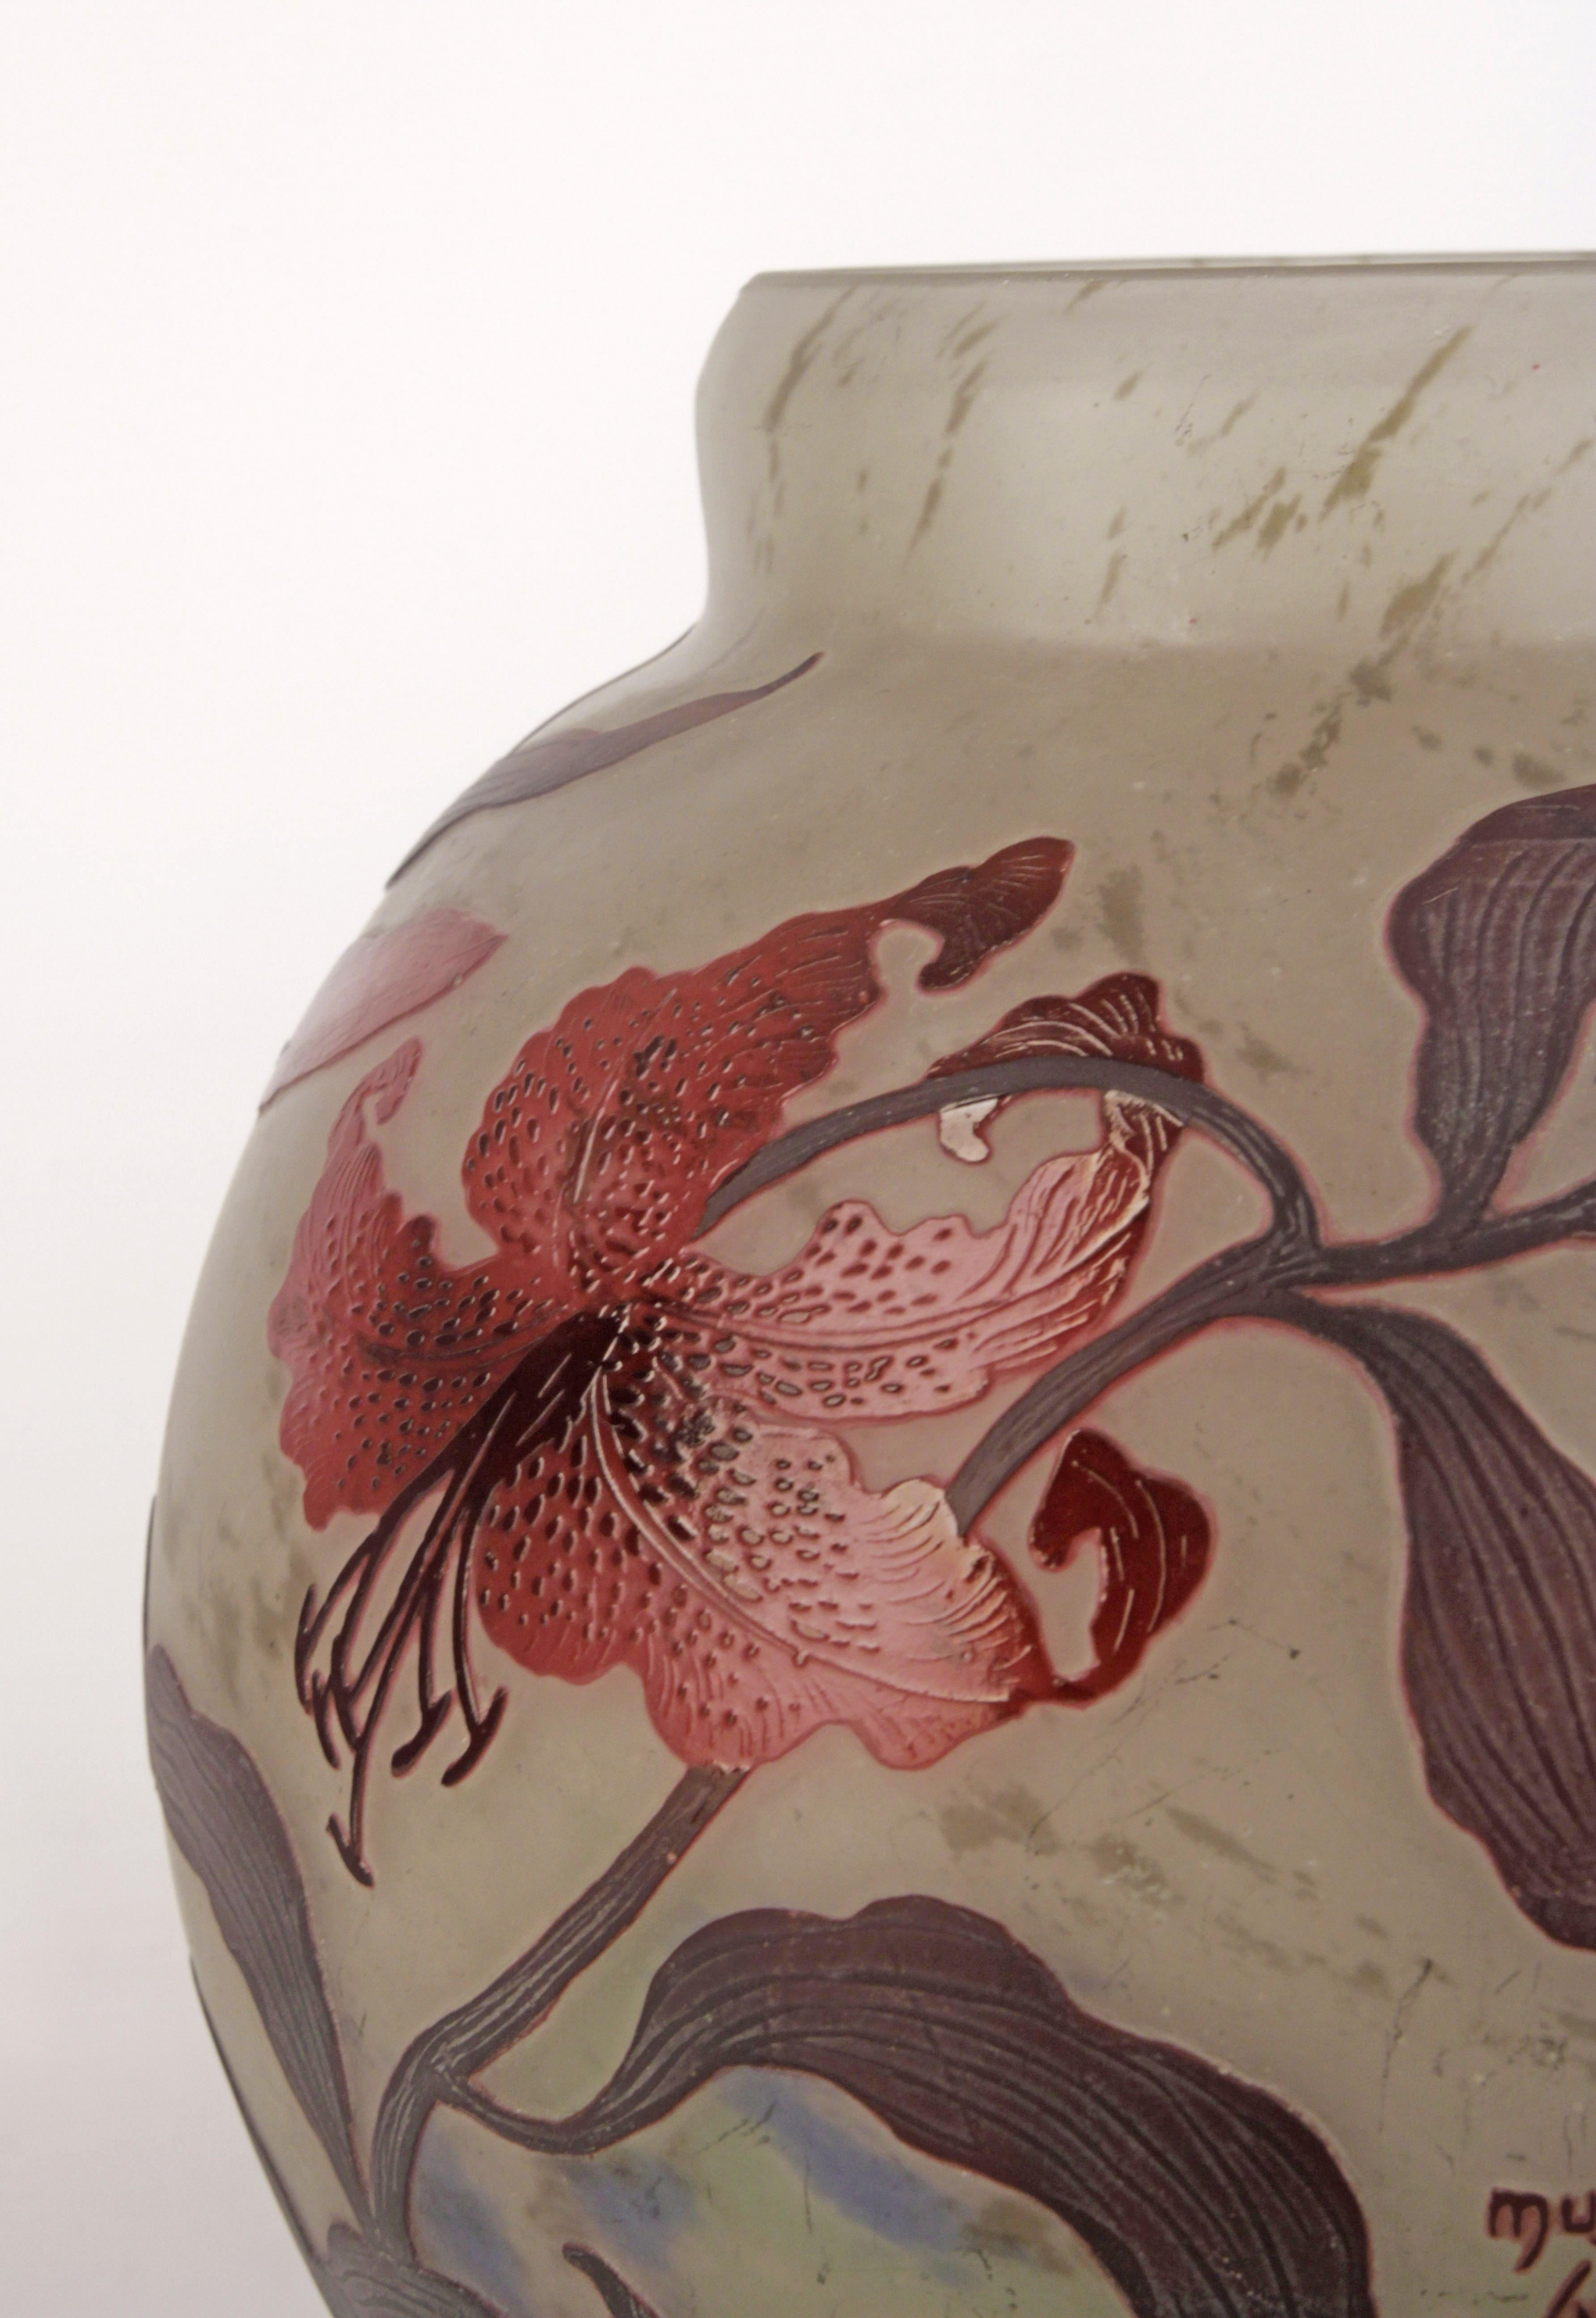 Vase en verre de Müller Frères avec un motif de fleurs. Technique du camée Art nouveau. Le vase est en excellent état et ne présente aucune restauration. circa 1910 Origine France. Couleurs : pigments blancs, rouges et quelques bleus clairs.
Nous